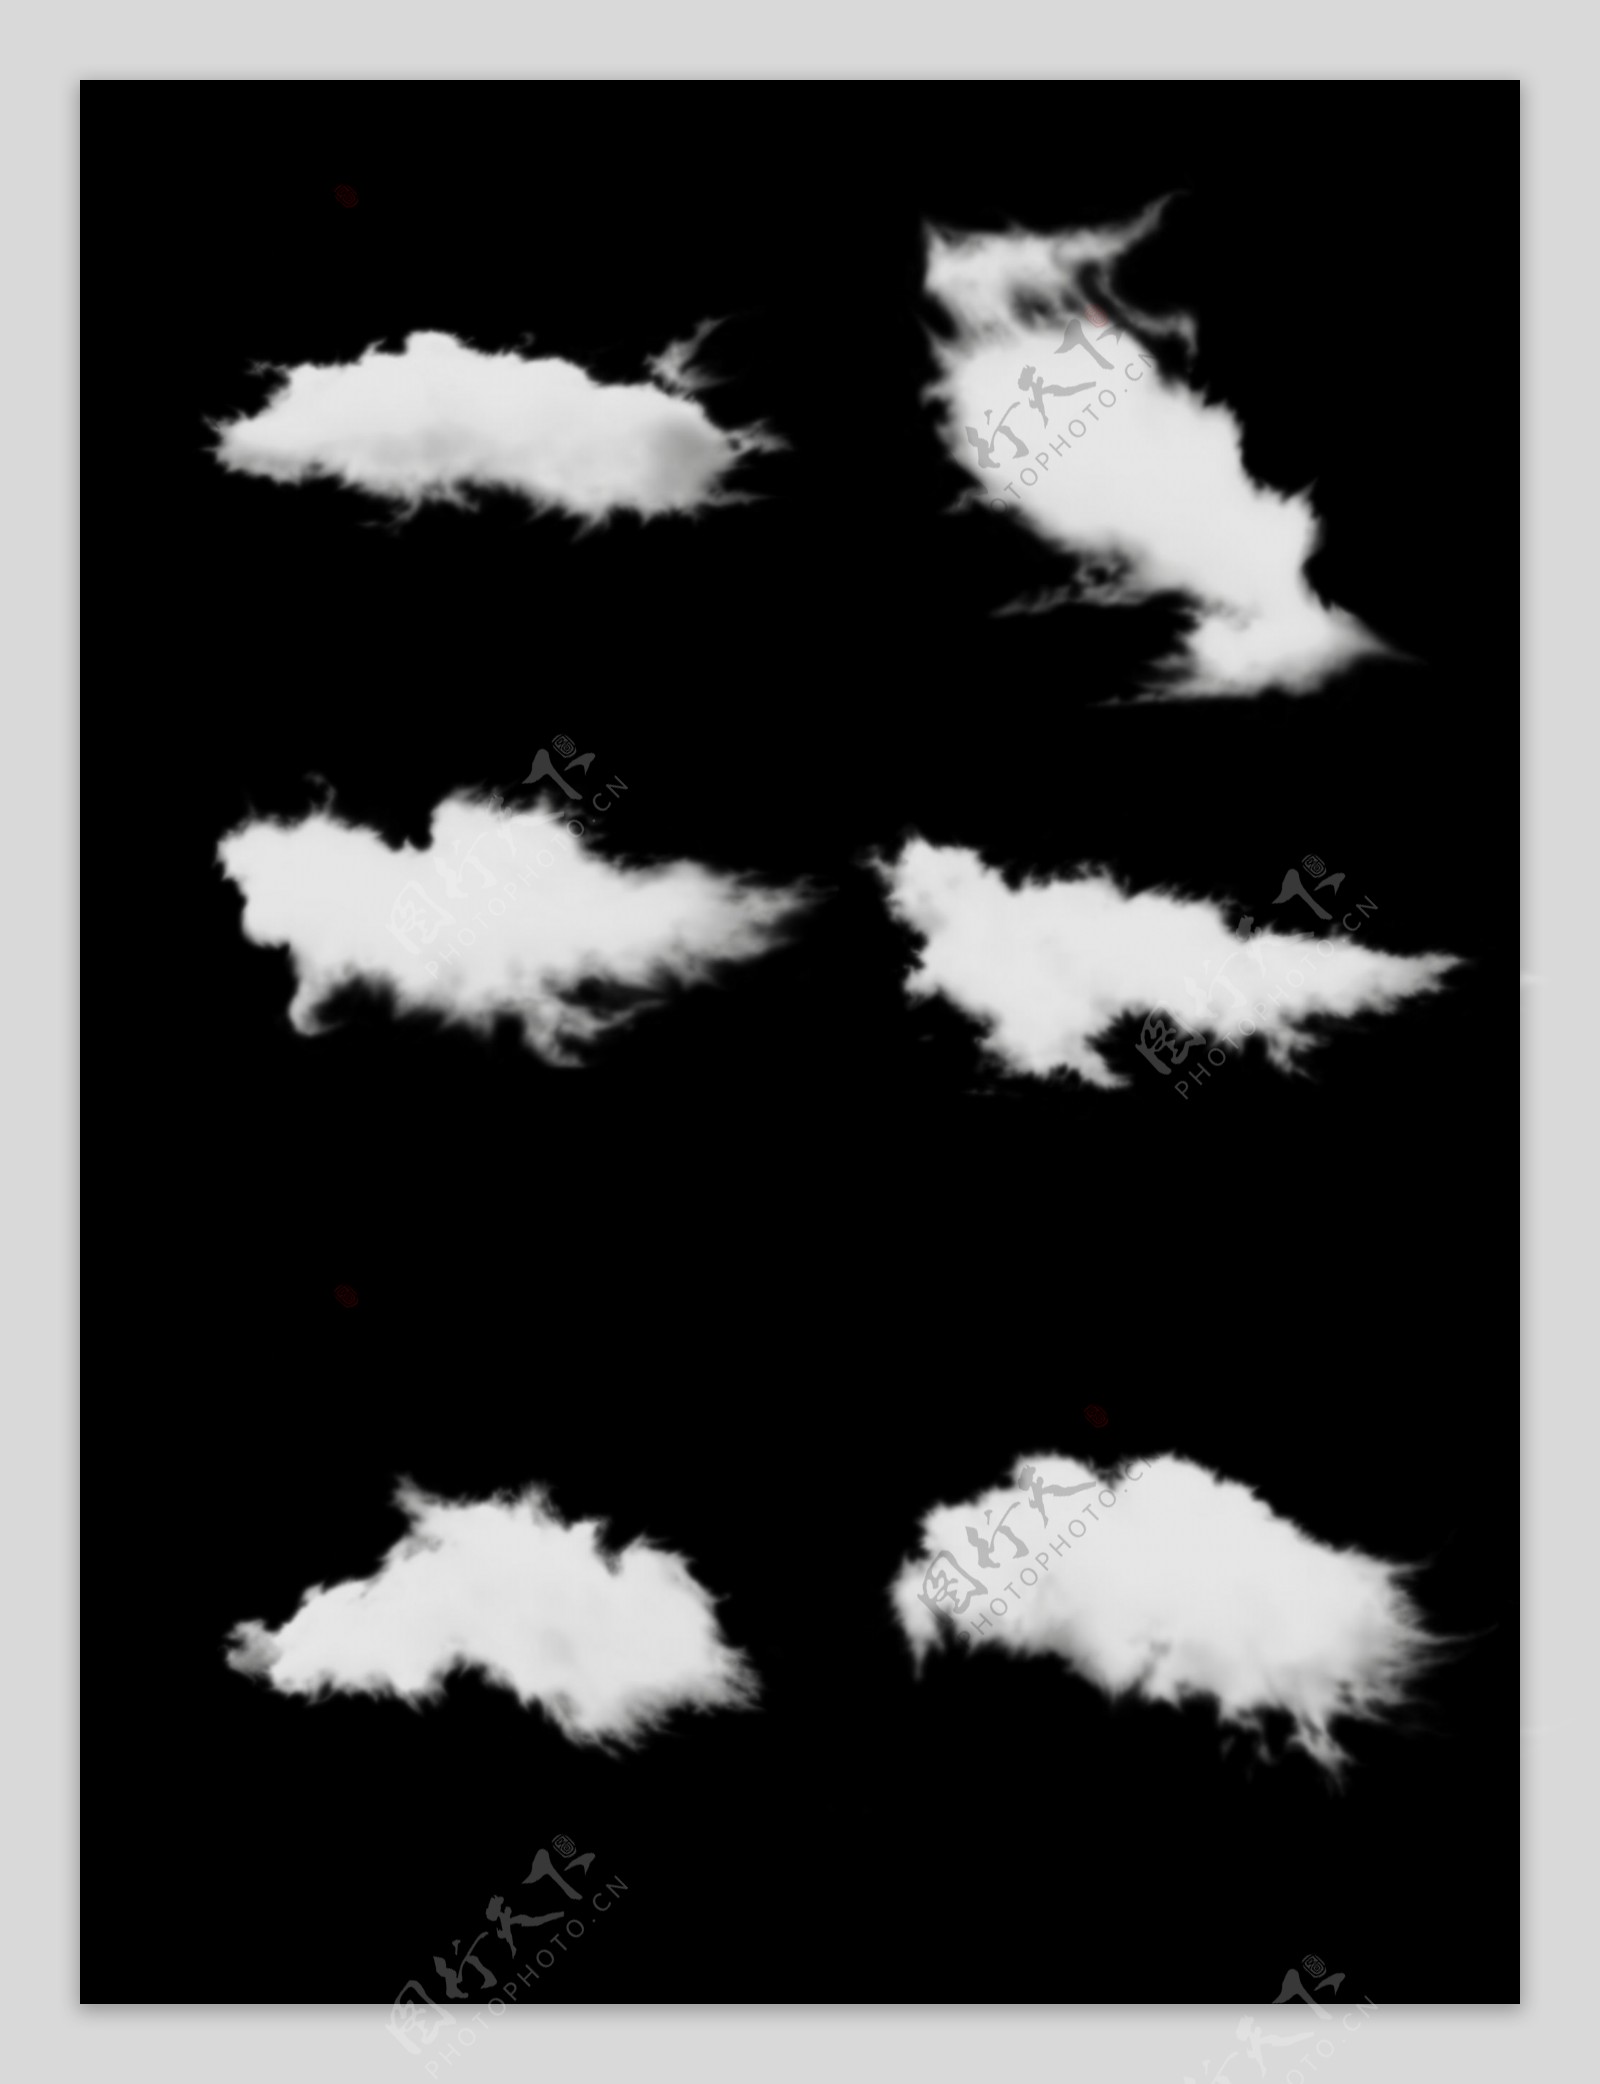 手绘实物质感真实云朵云彩套图元素